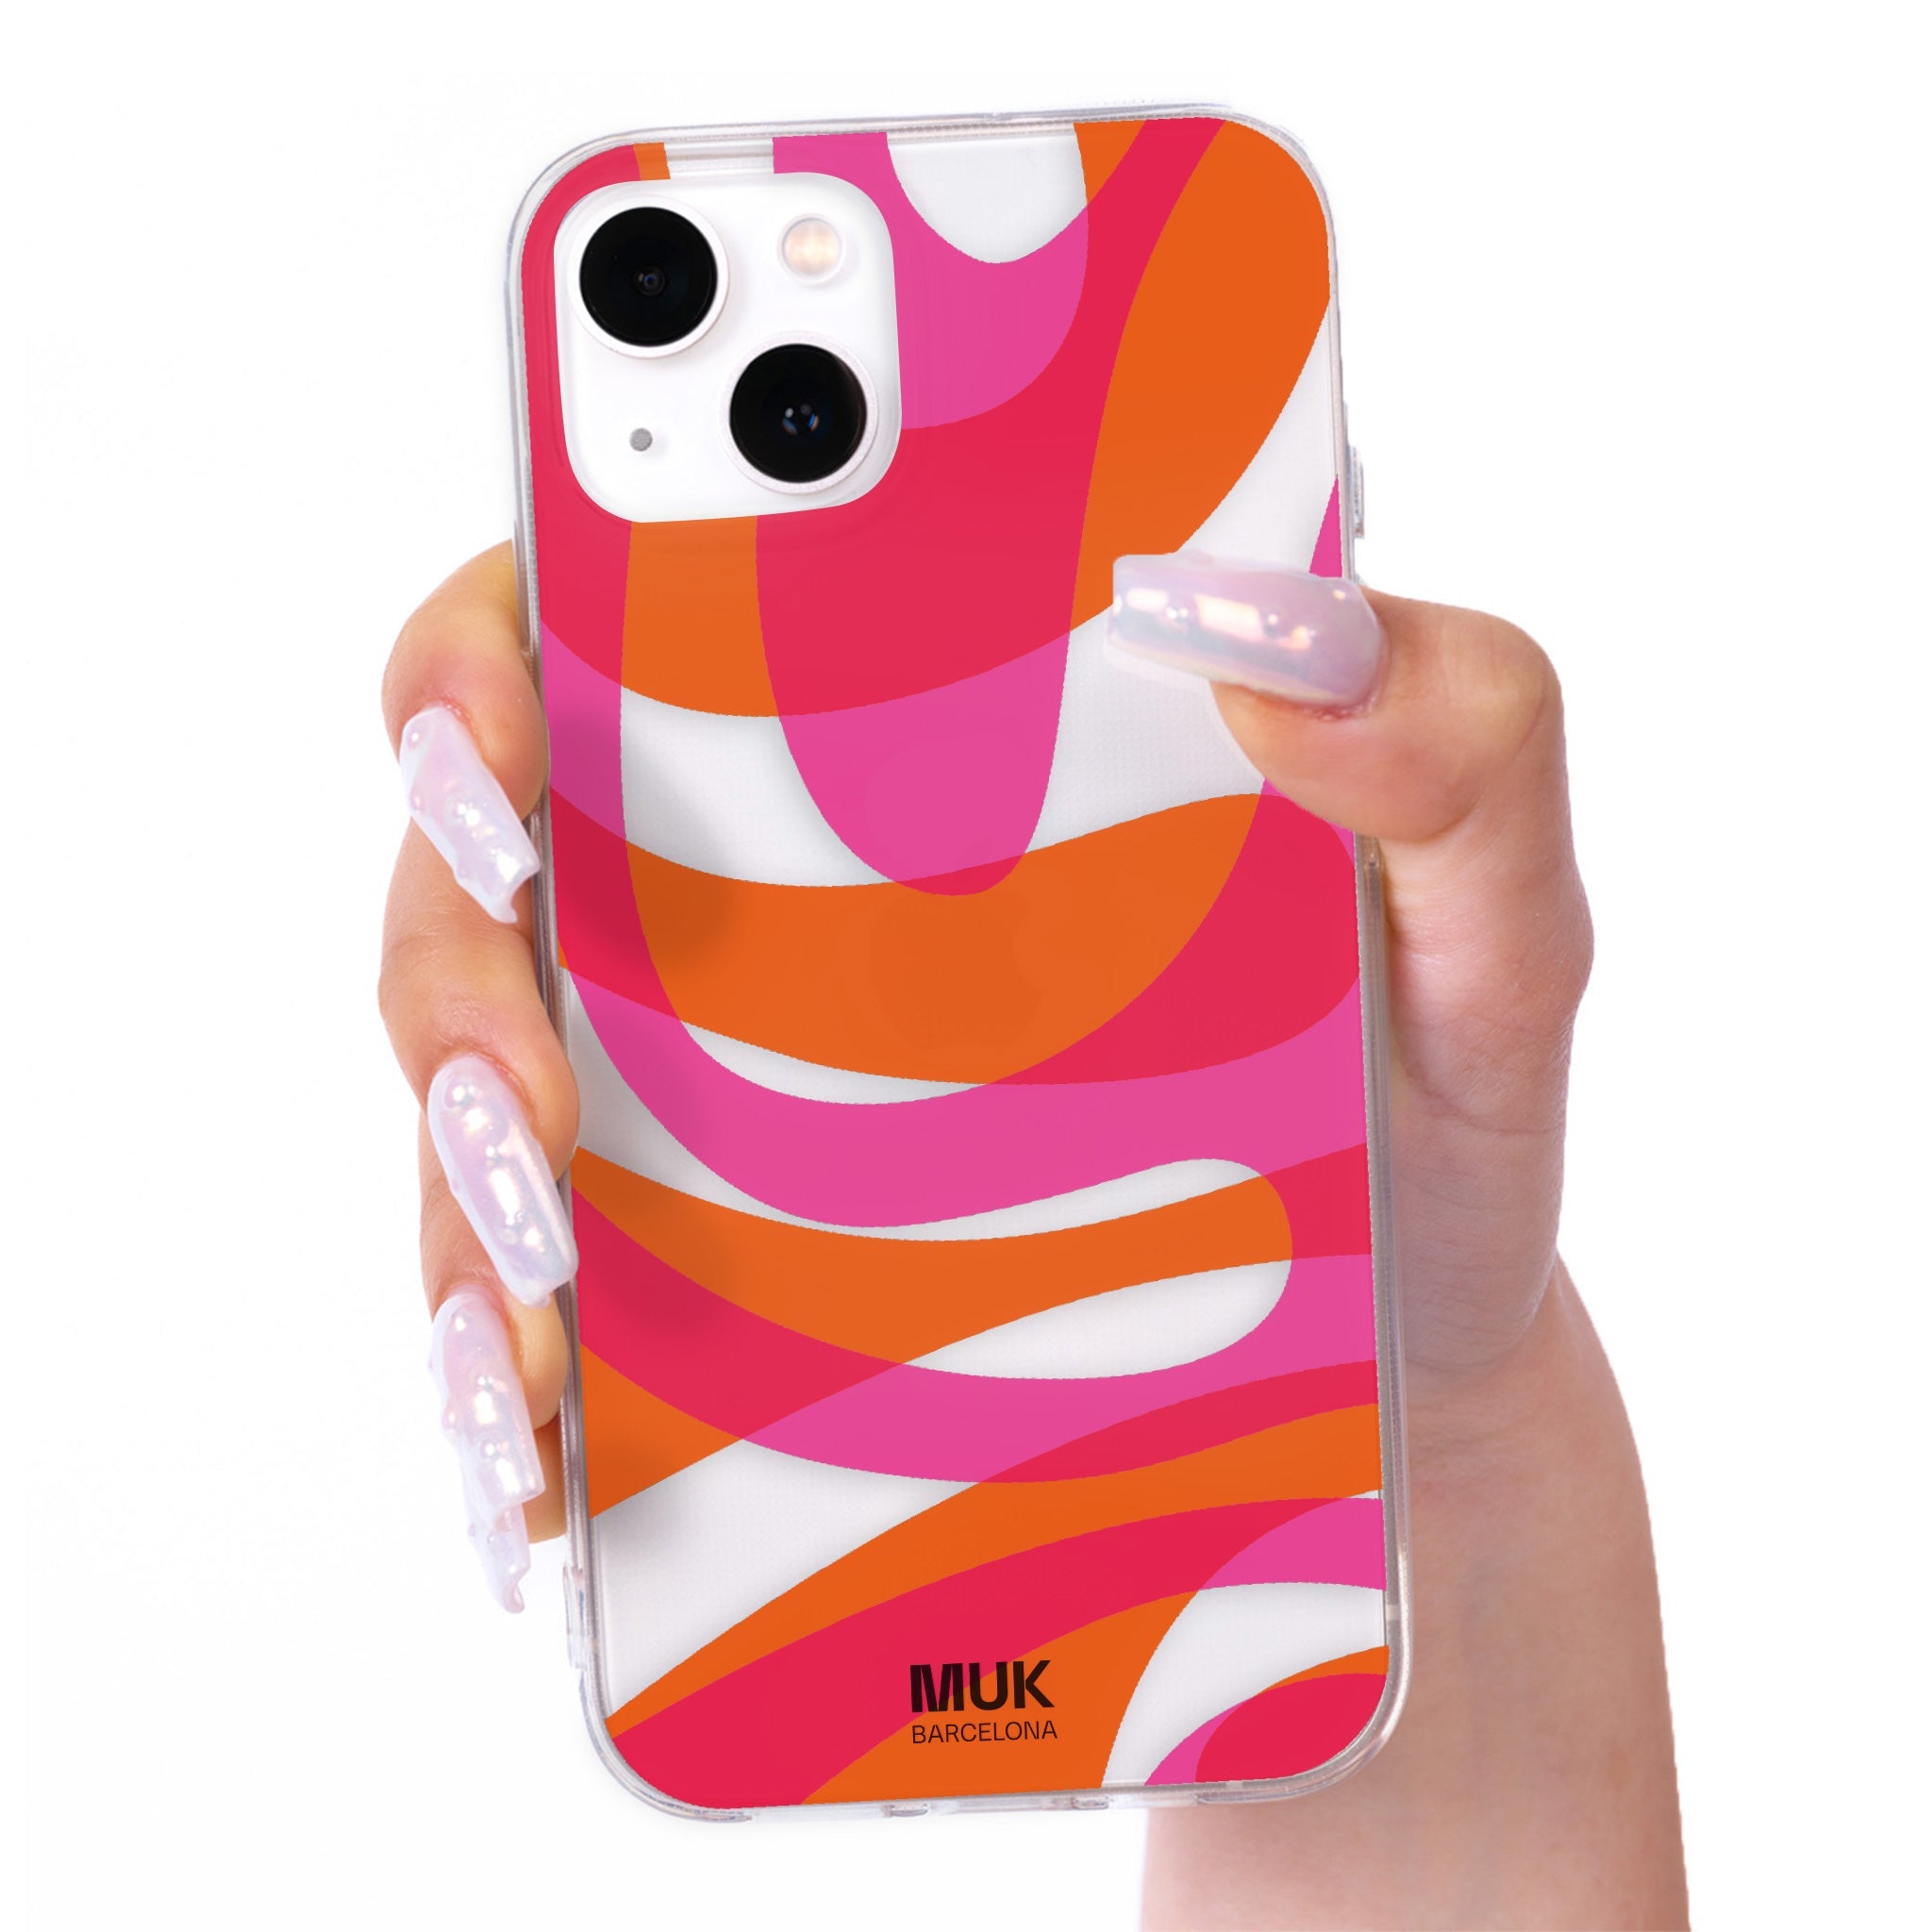 Funda de móvil transparente con estampado coral rosa y naranja.
